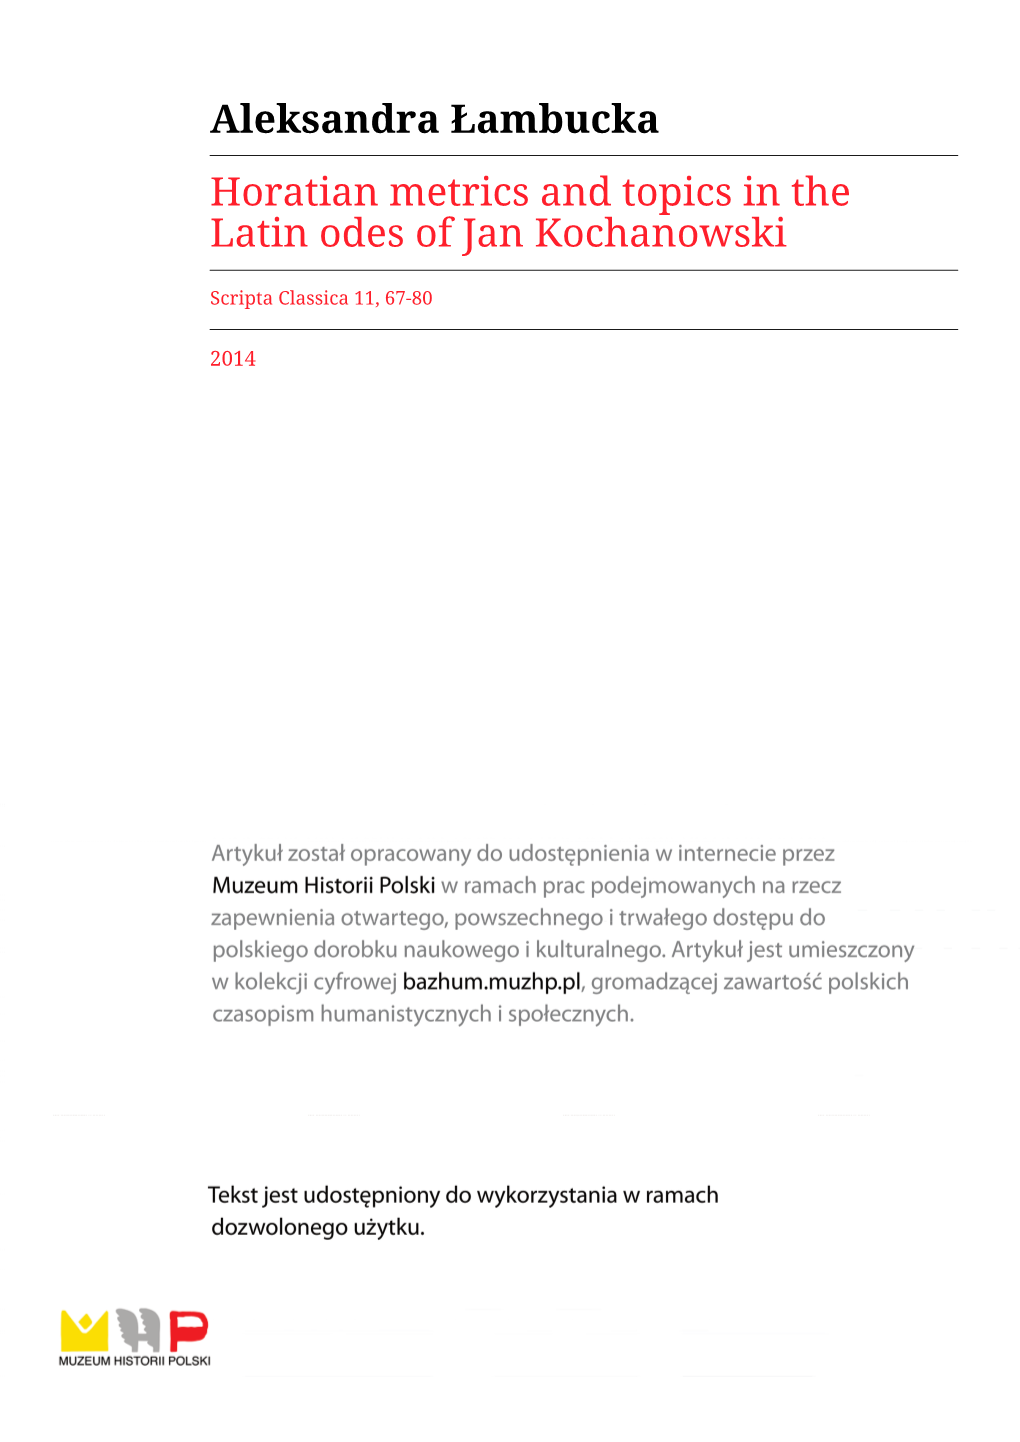 Aleksandra Łambucka Horatian Metrics and Topics in the Latin Odes of Jan Kochanowski